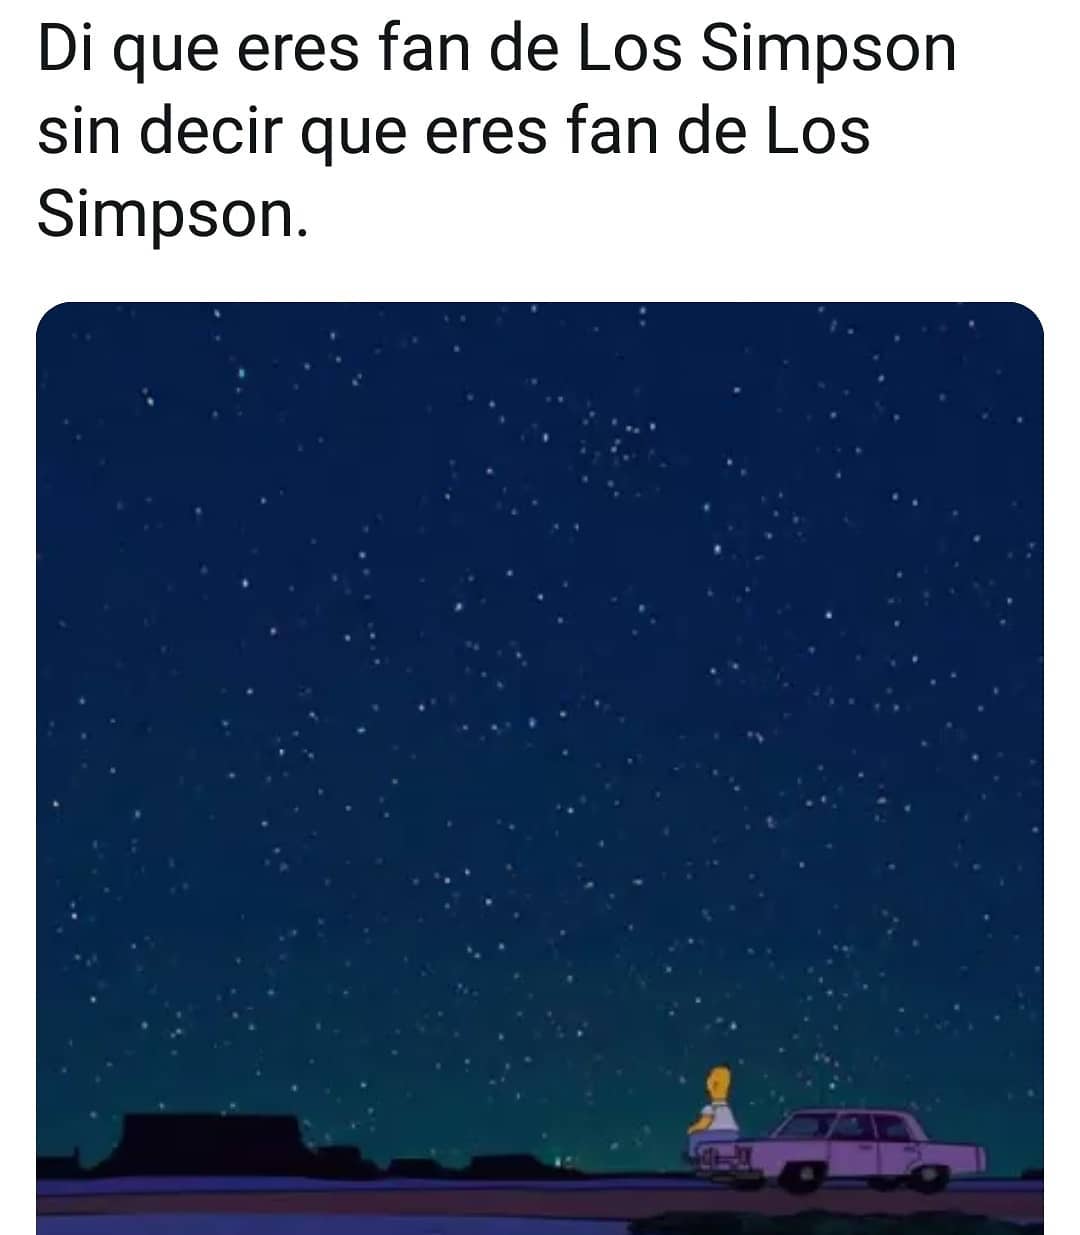 Di que eres fan de Los Simpson sin decir que eres fan de Los Simpson.